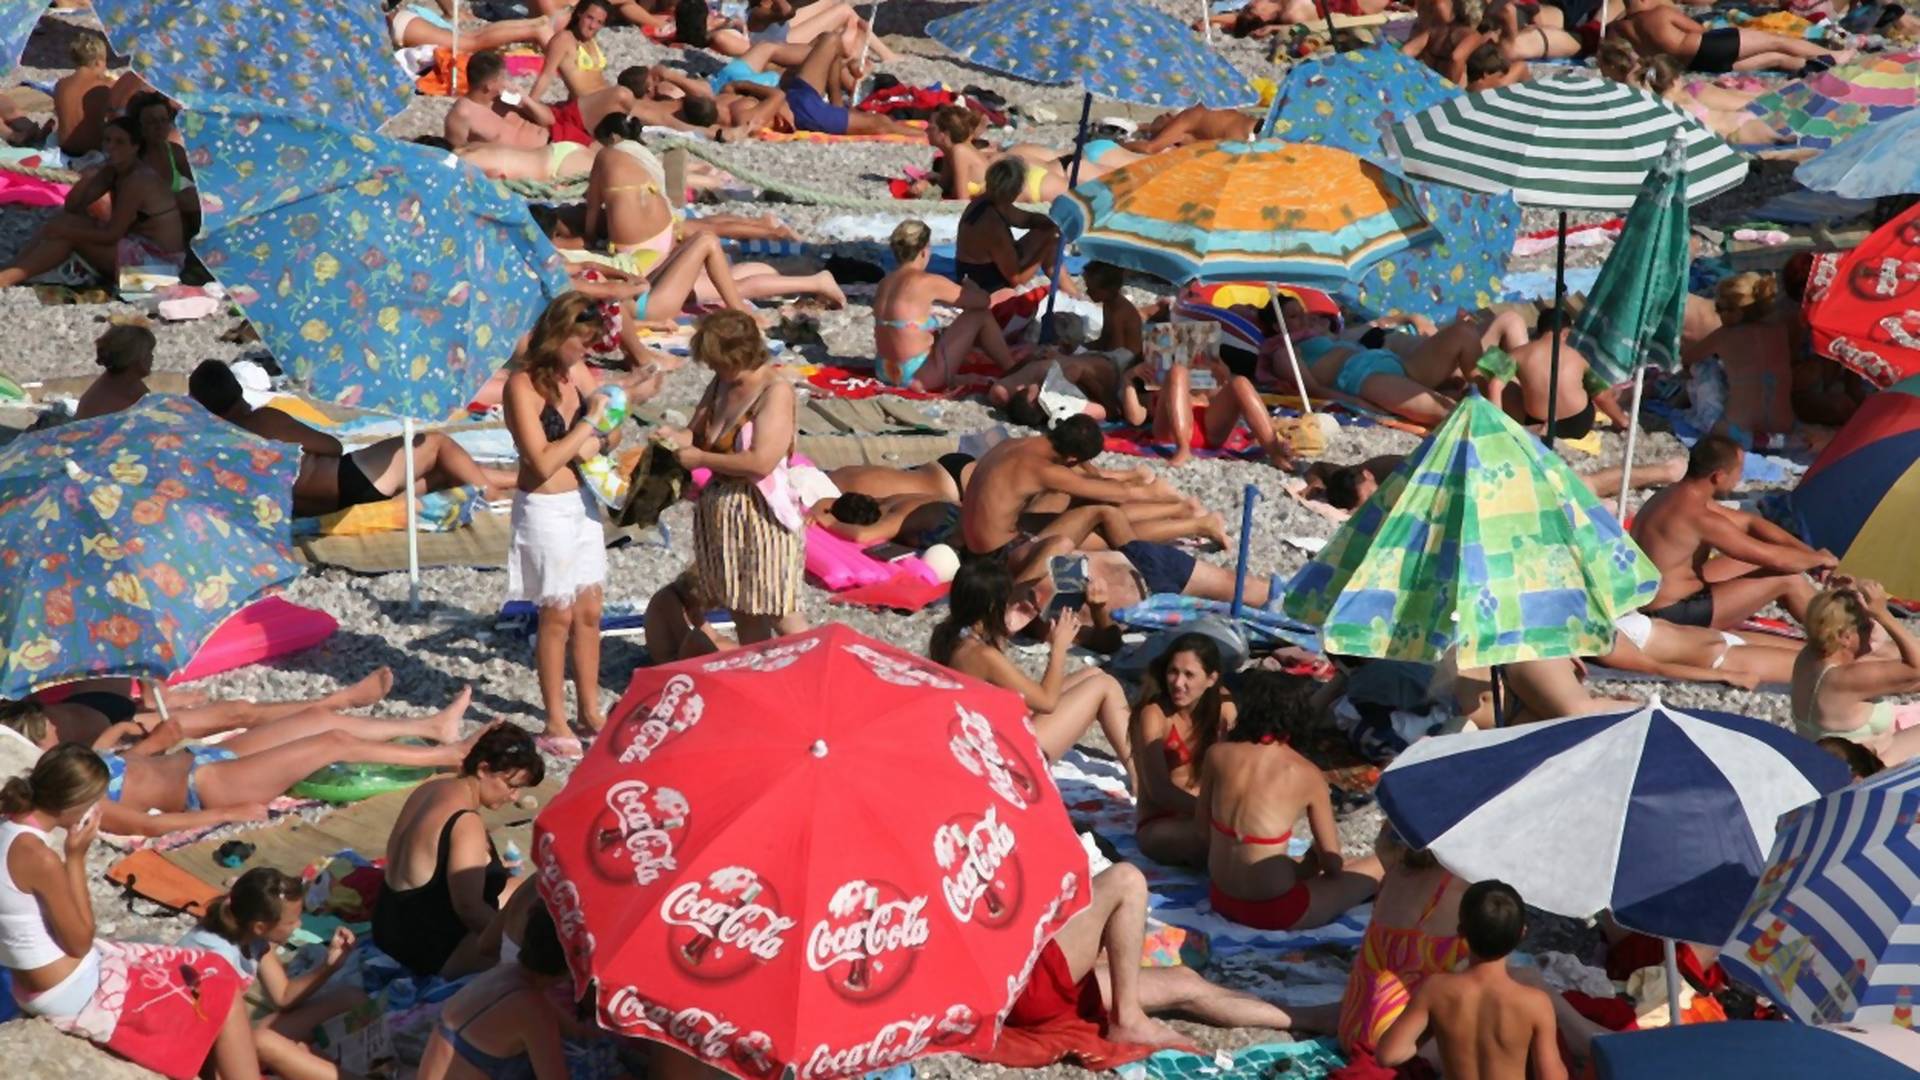 Ljudi u neverici dele sliku sa plaže u Crnoj Gori: Ovo je nekultura i bezobrazluk